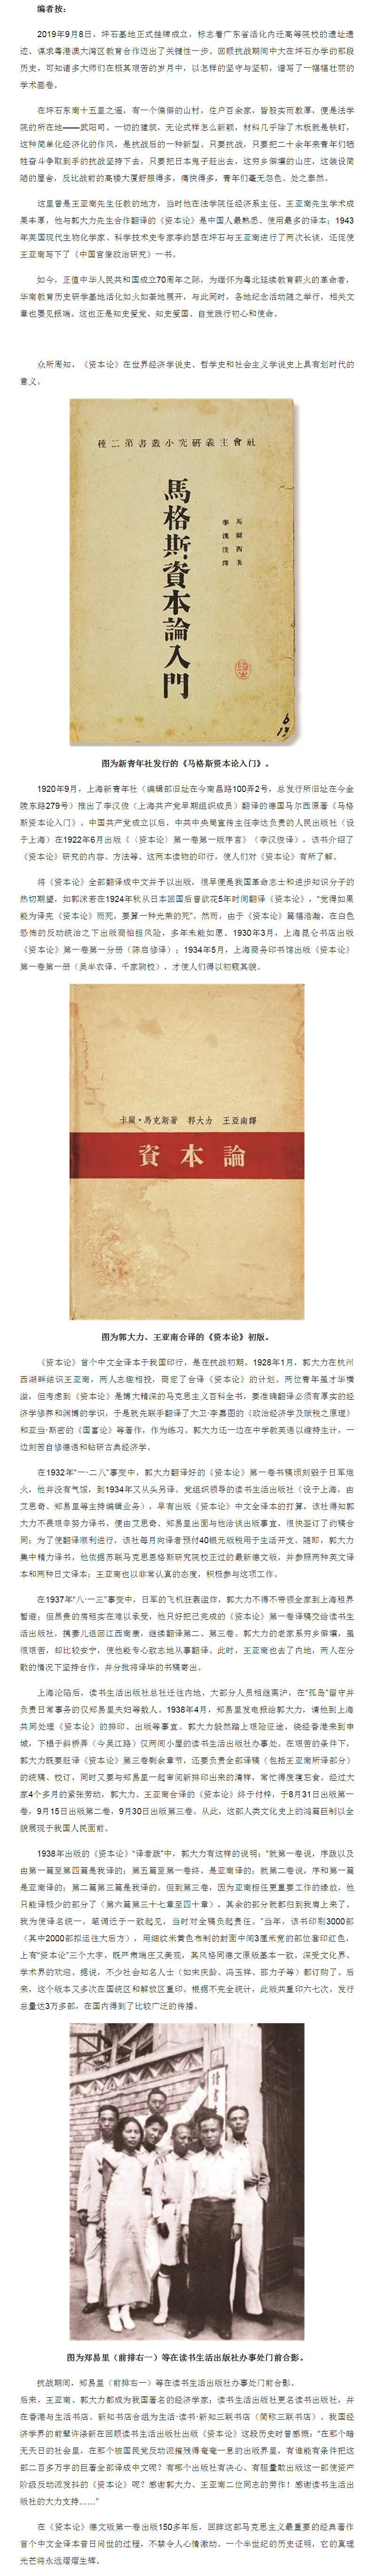 那年，《资本论》首个中文译本问世，闪耀真理光芒.png